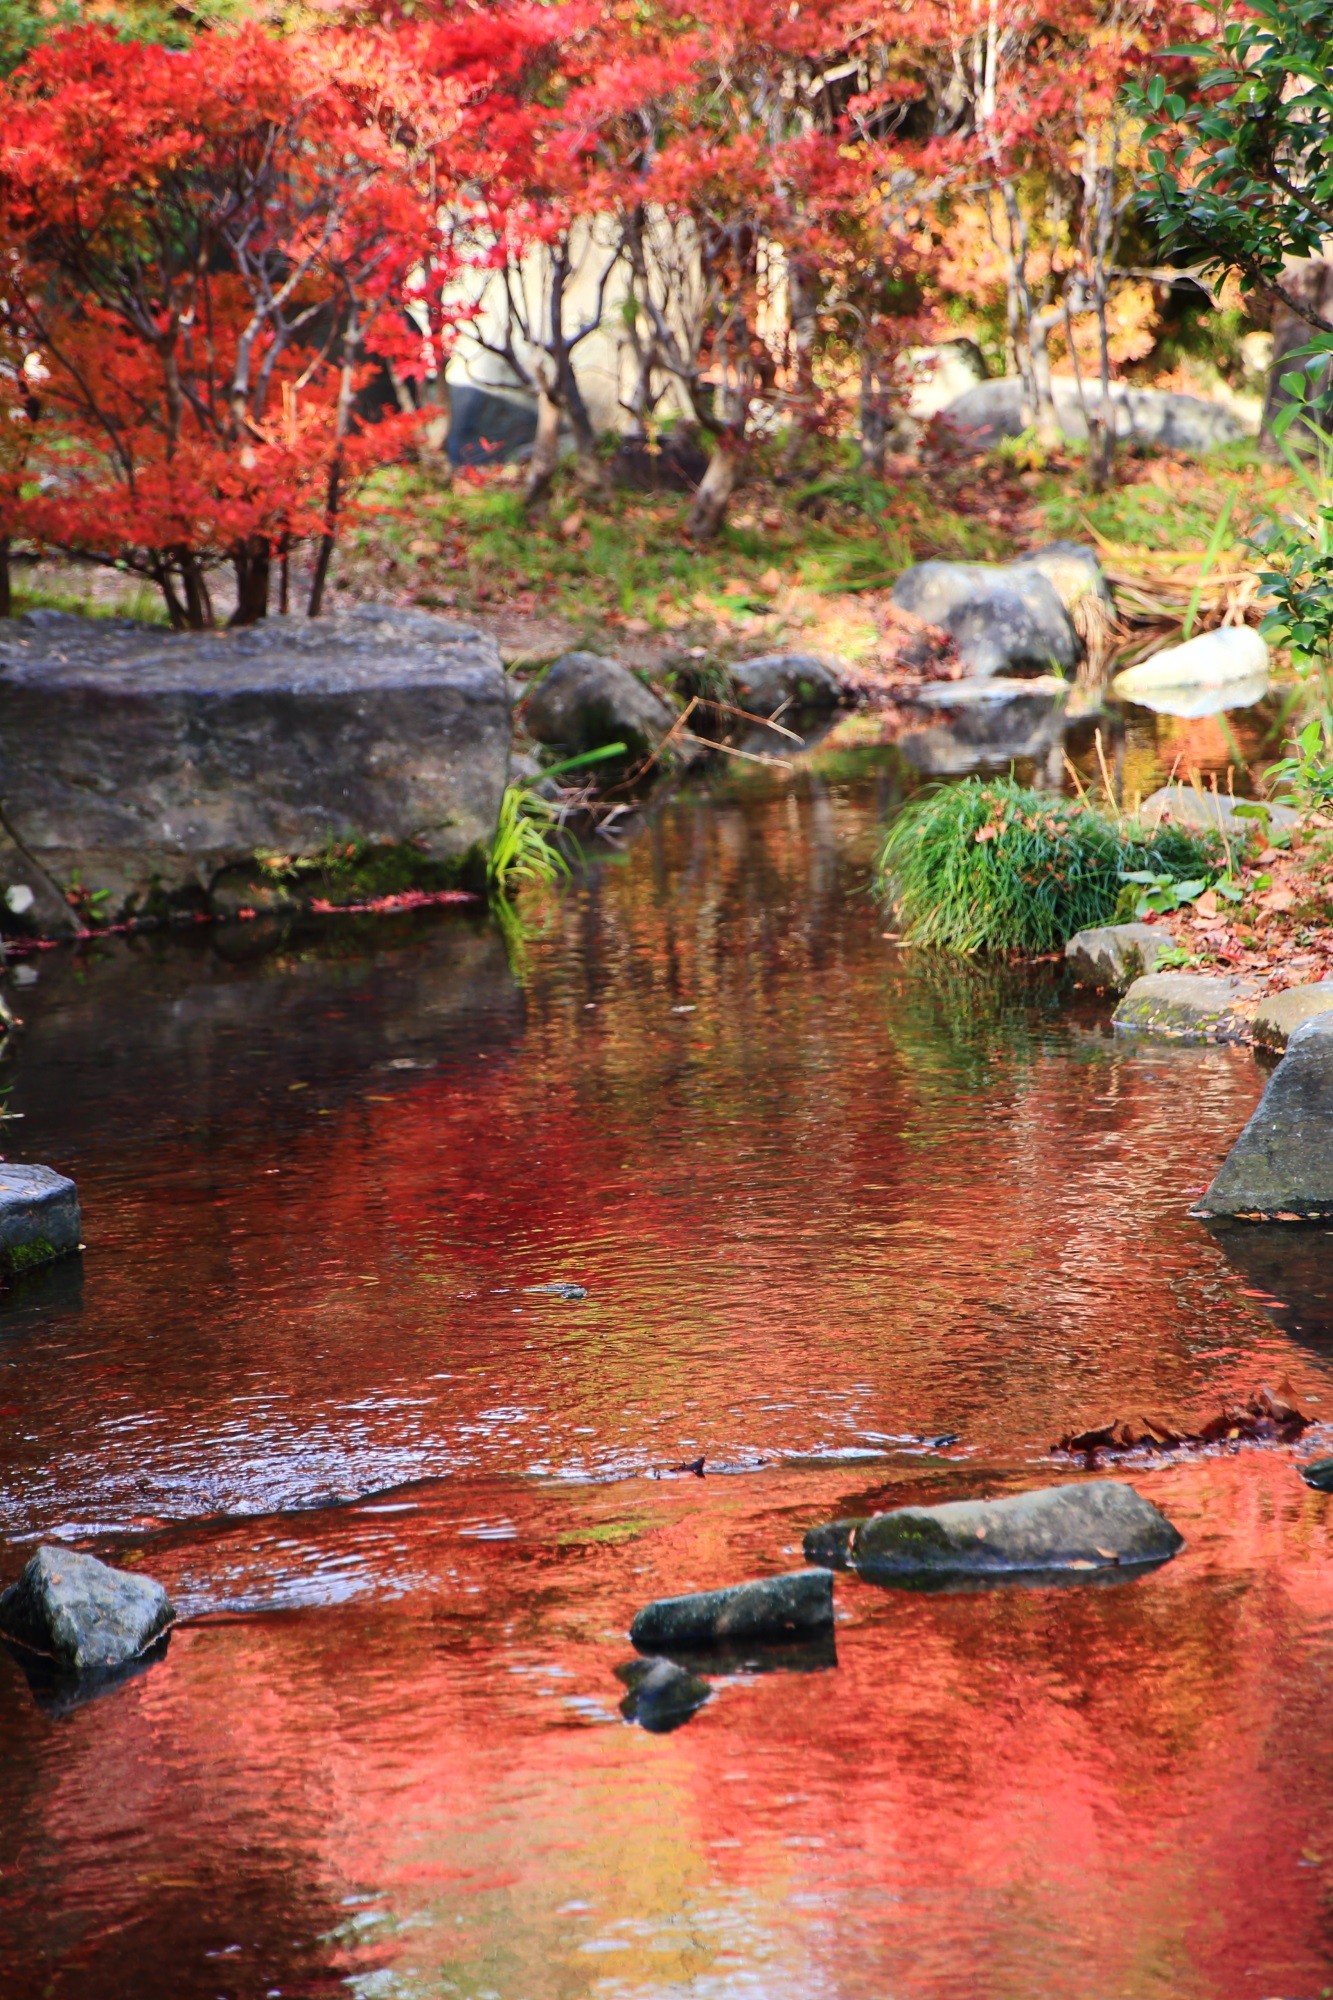 もみじの名所の梅小路公園（うめこうじこうえん）の見ごろの紅葉と幻想的な水鏡